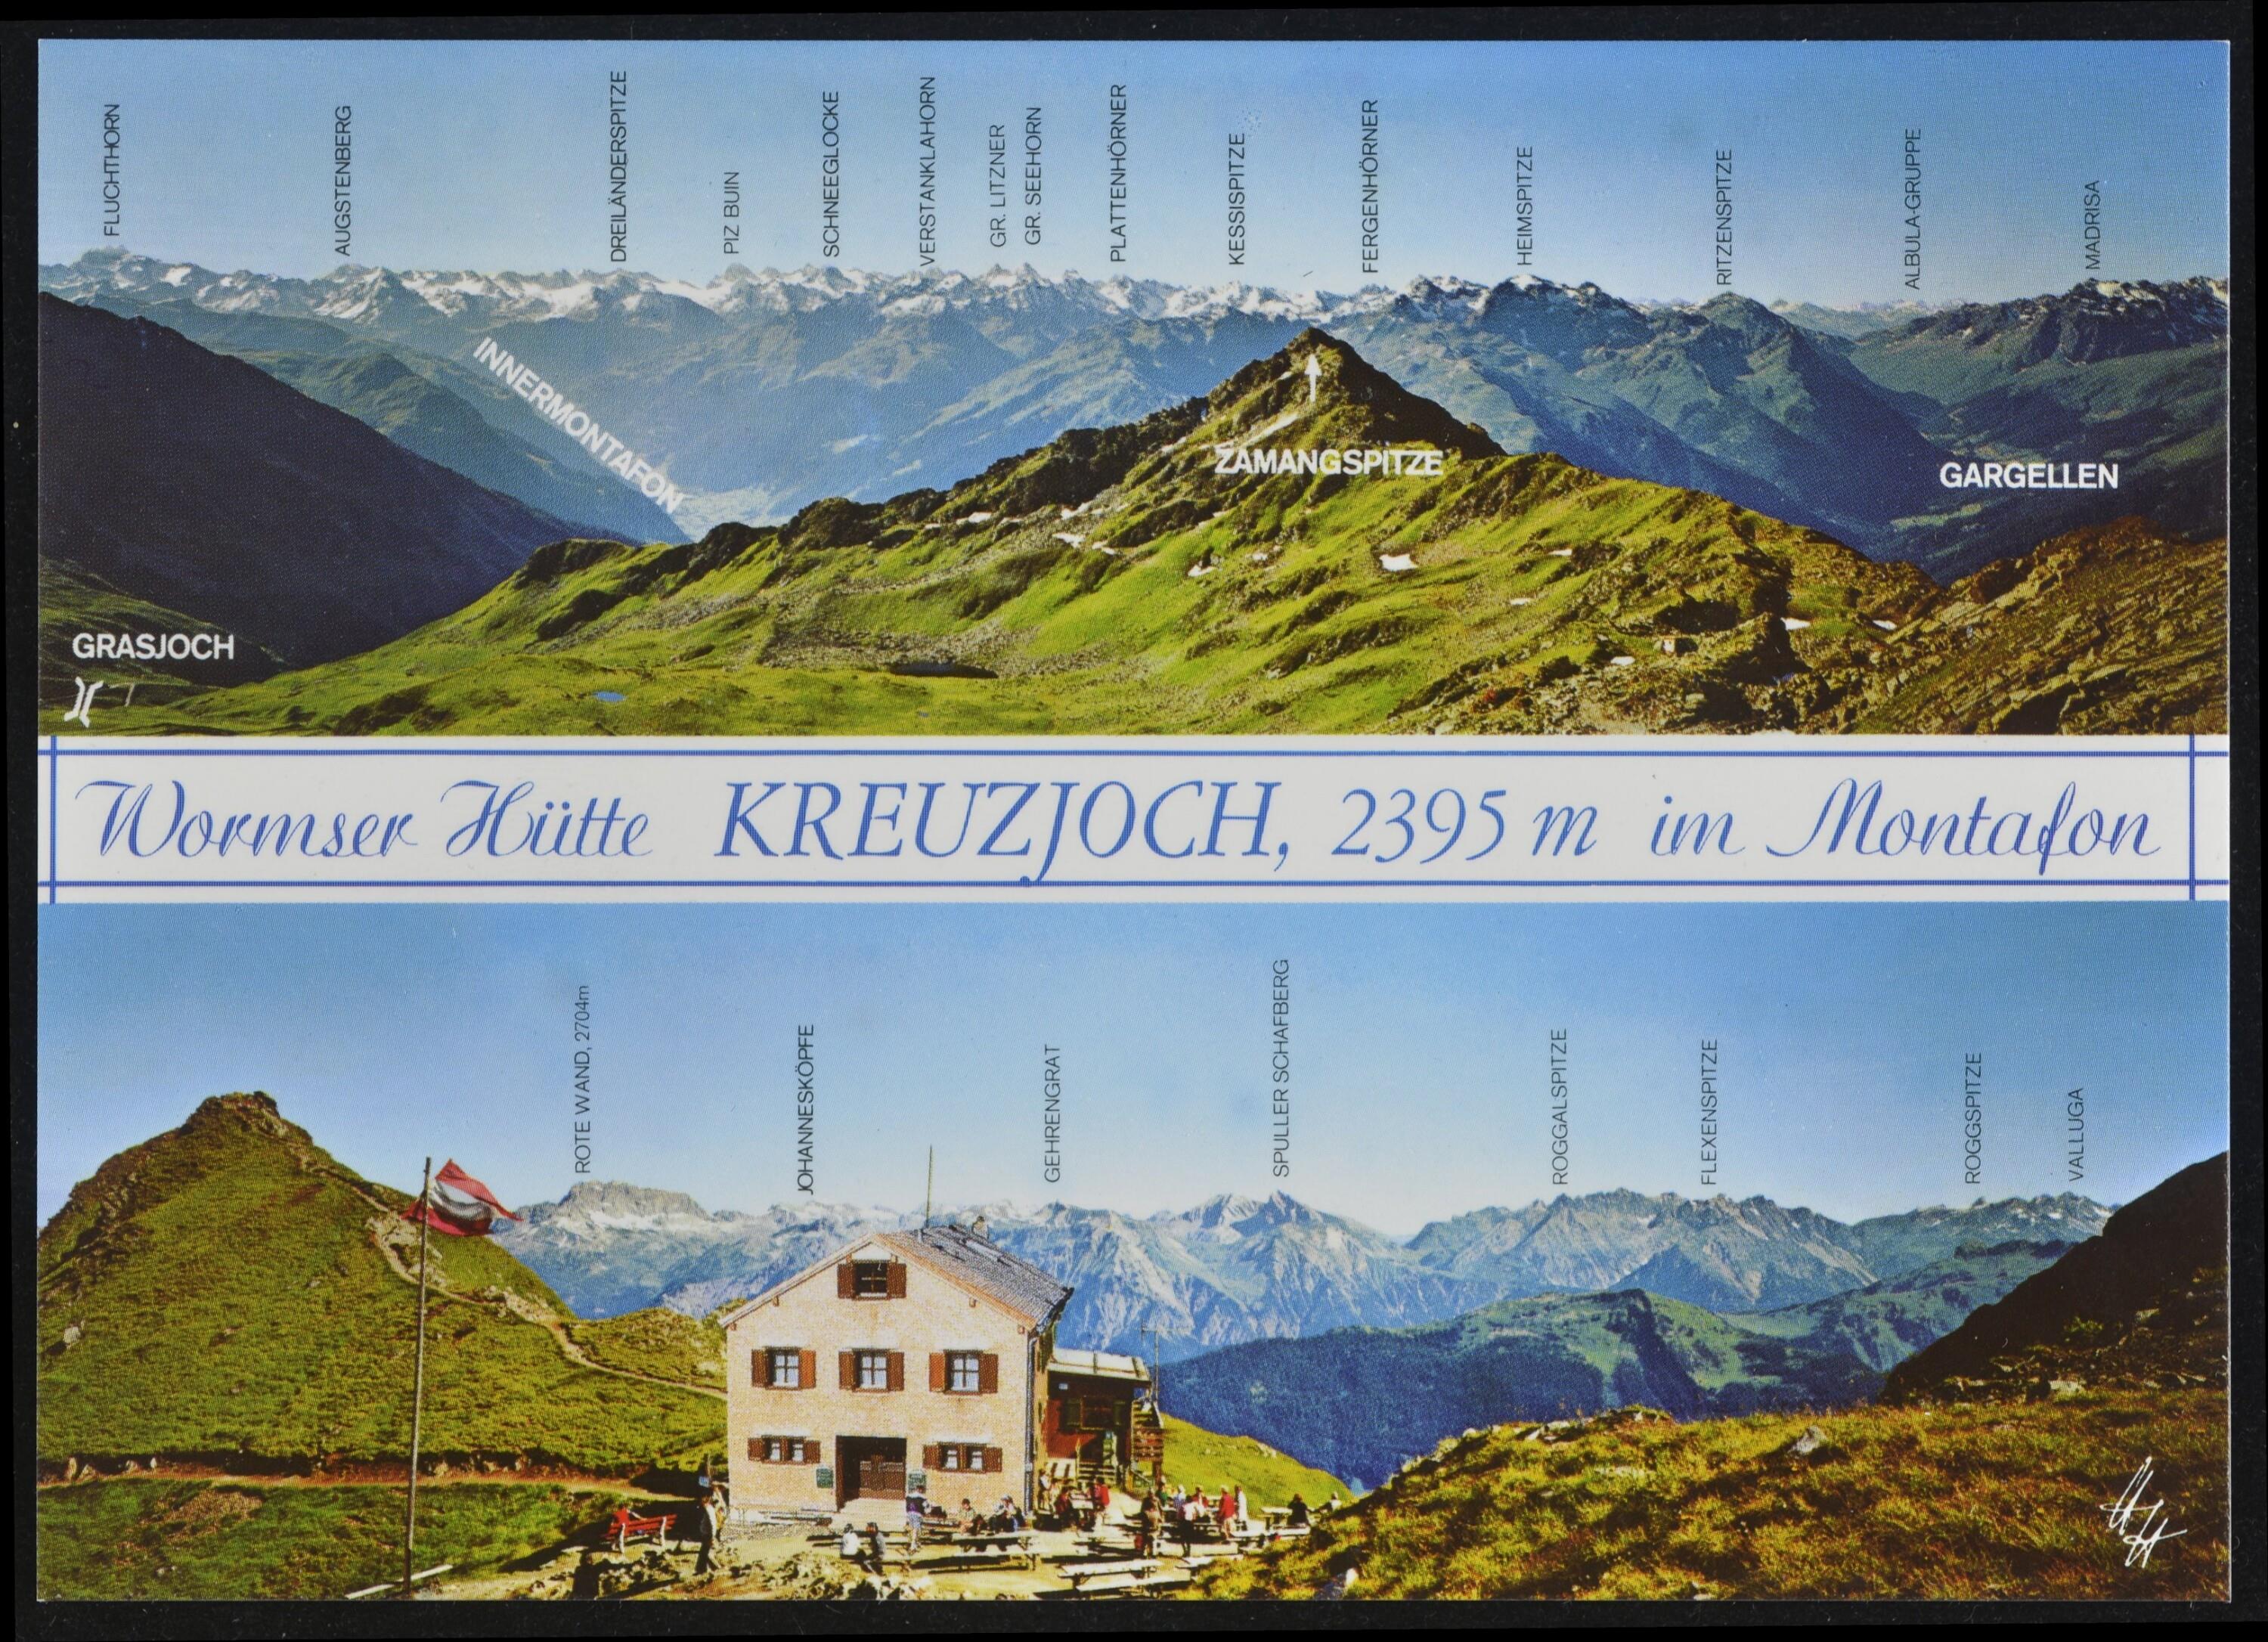 [Schruns] Wormser Hütte Kreuzjoch, 2395 m im Montafon></div>


    <hr>
    <div class=